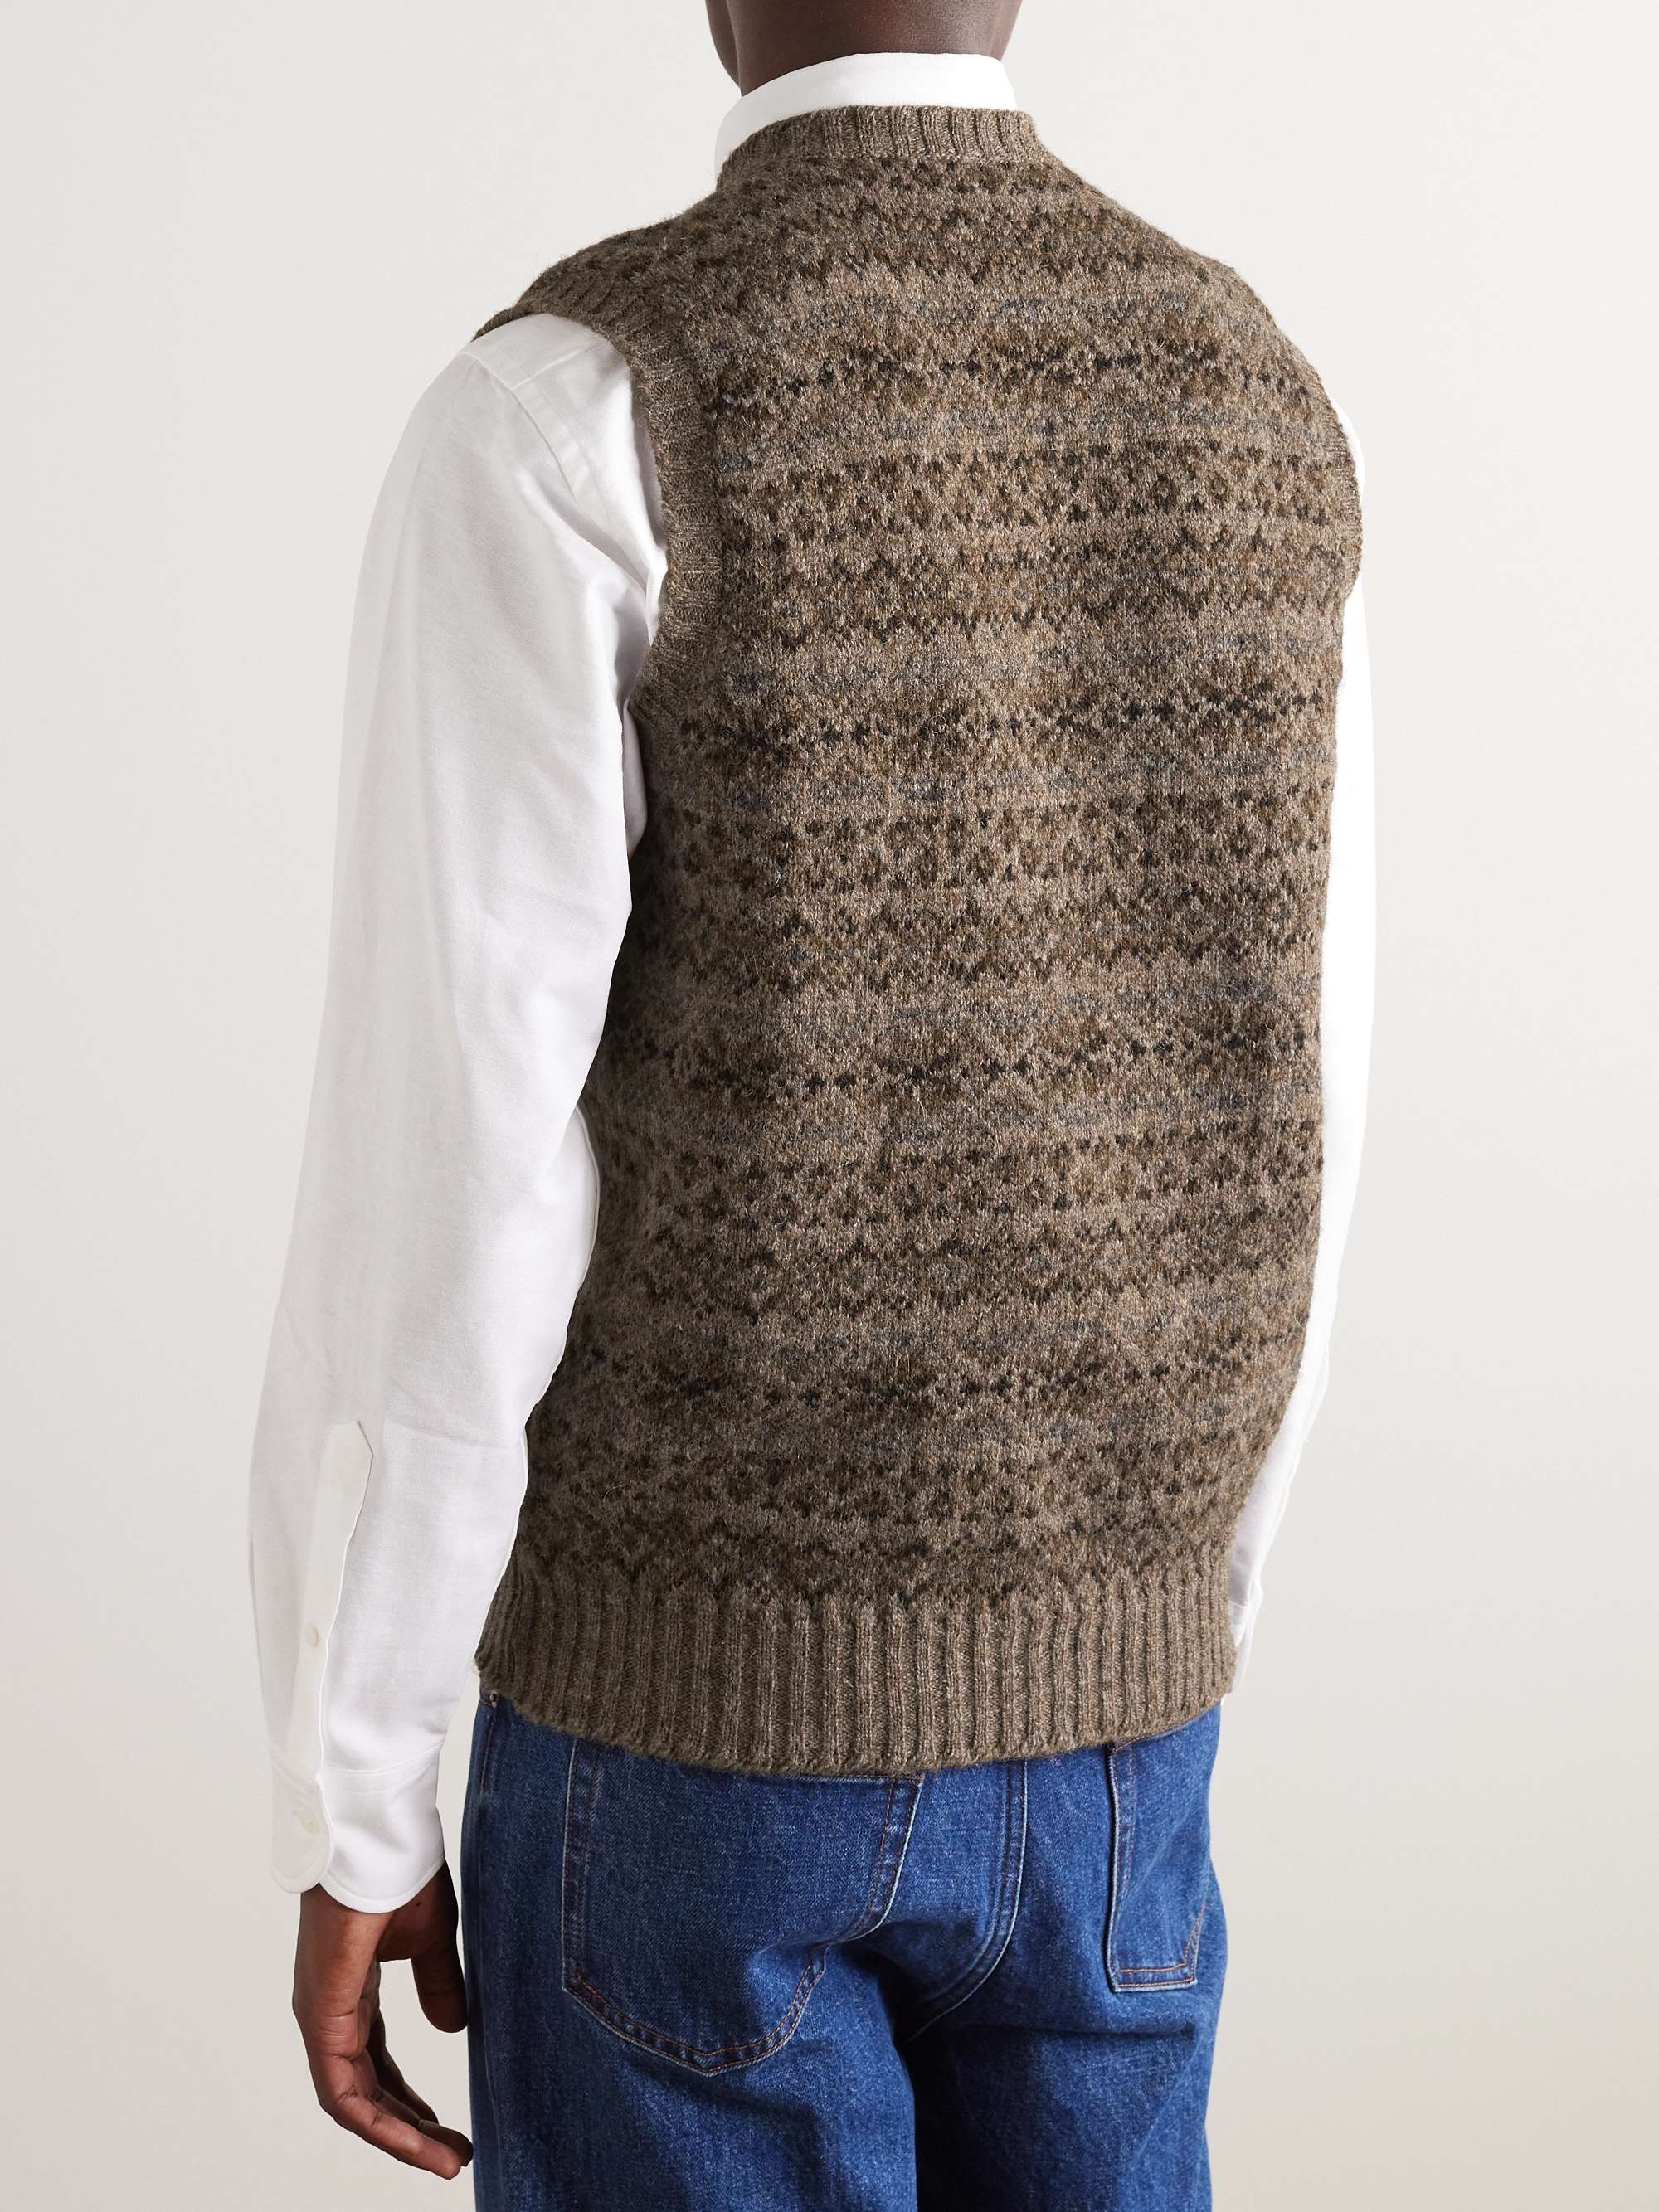 DRAKE'S Fair Isle Wool Sweater Vest for Men | MR PORTER